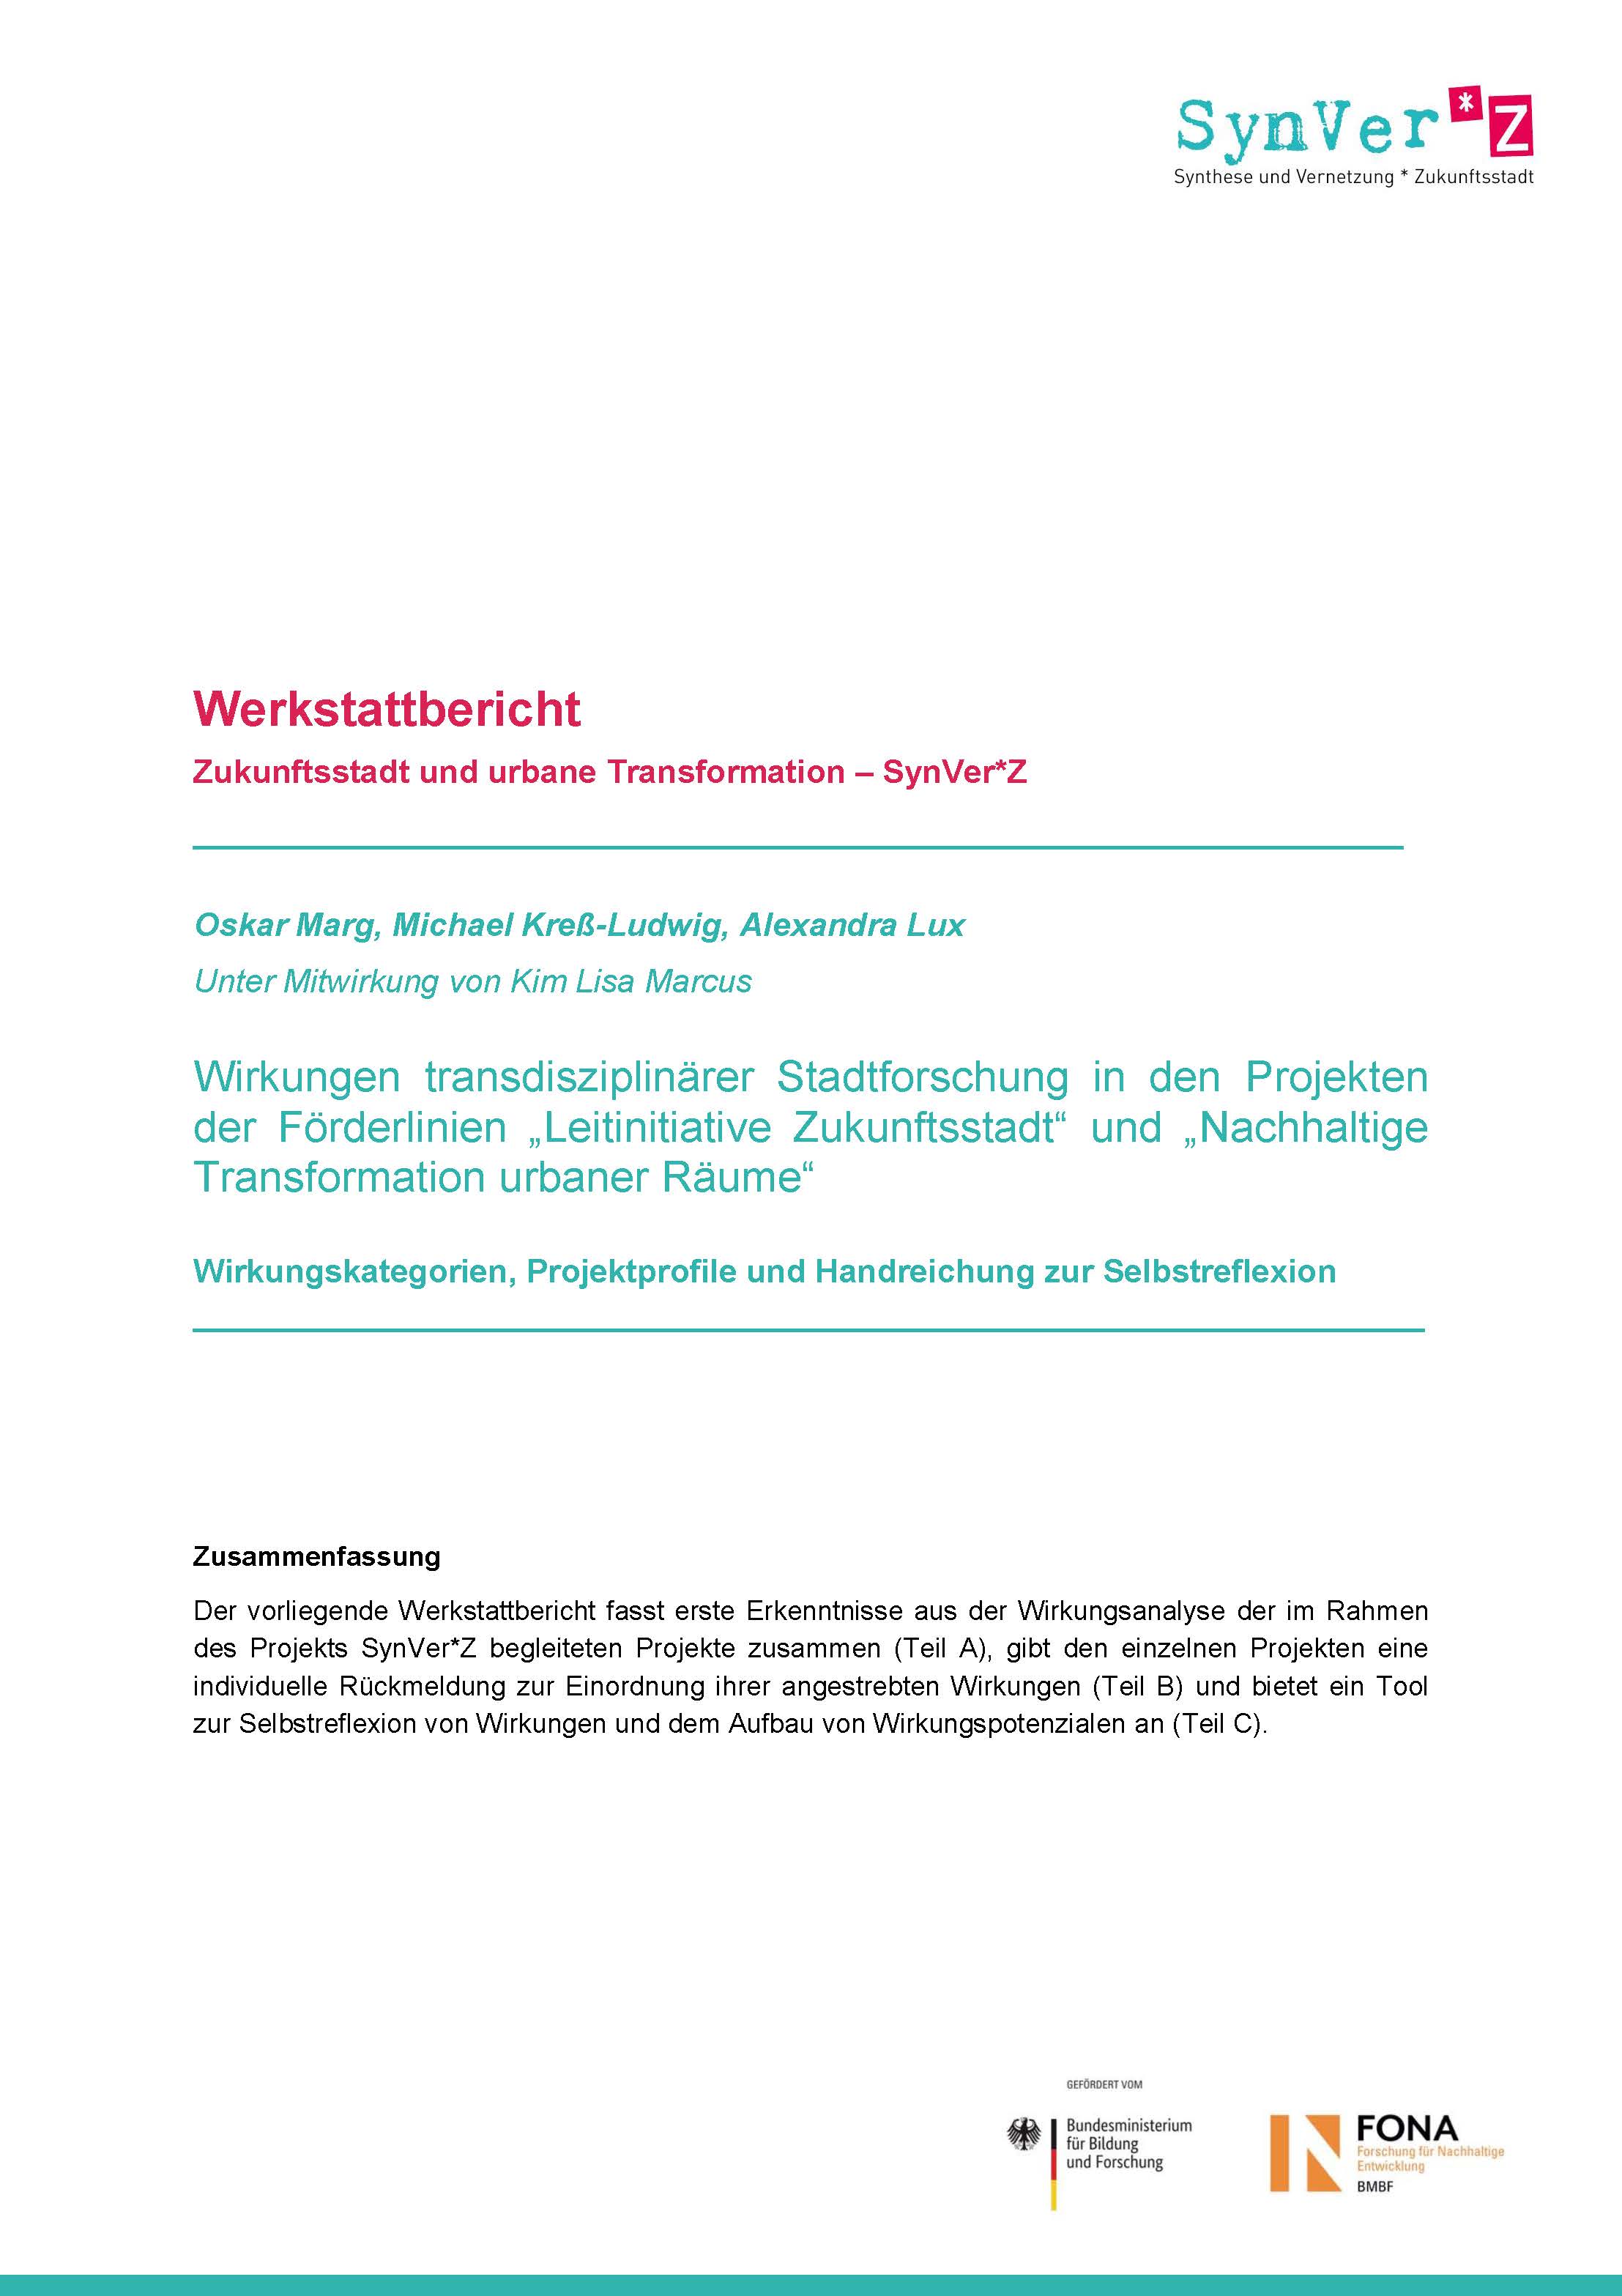 Marg et al. SynVerZ 2019 Werkstattbericht Wirkungen transdisziplinarer Stadtforschung